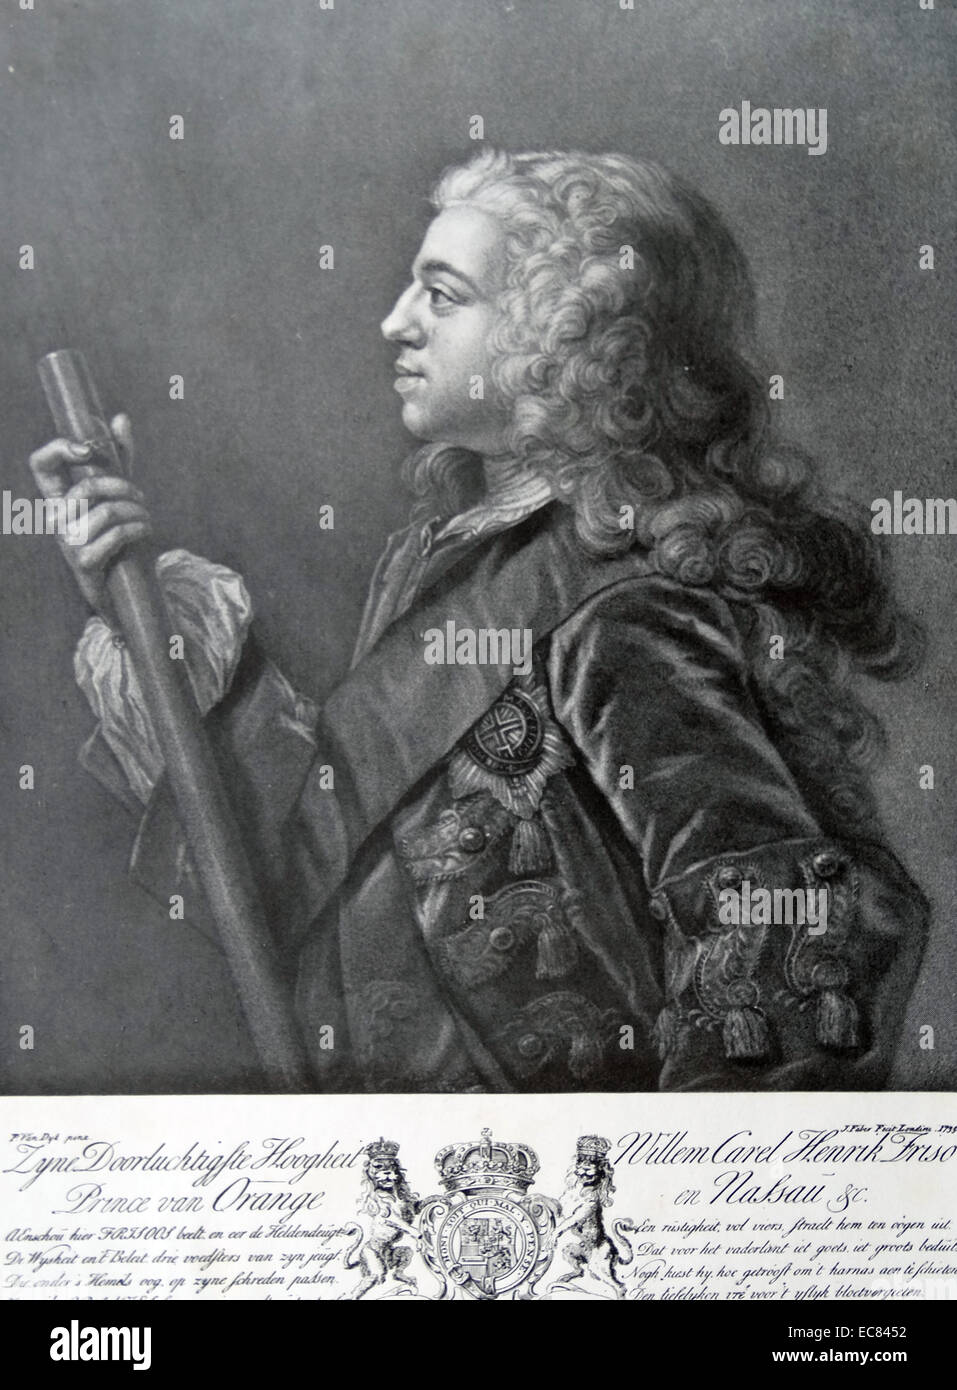 William IV, prince d'Orange-Nassau (1 septembre 1711 - 22 octobre 1751) ; né Willem Karel Hendrik Friso ; était le premier stathouder héréditaire des Pays-Bas. Avril 1747 Confirmation comme stathouder. Banque D'Images